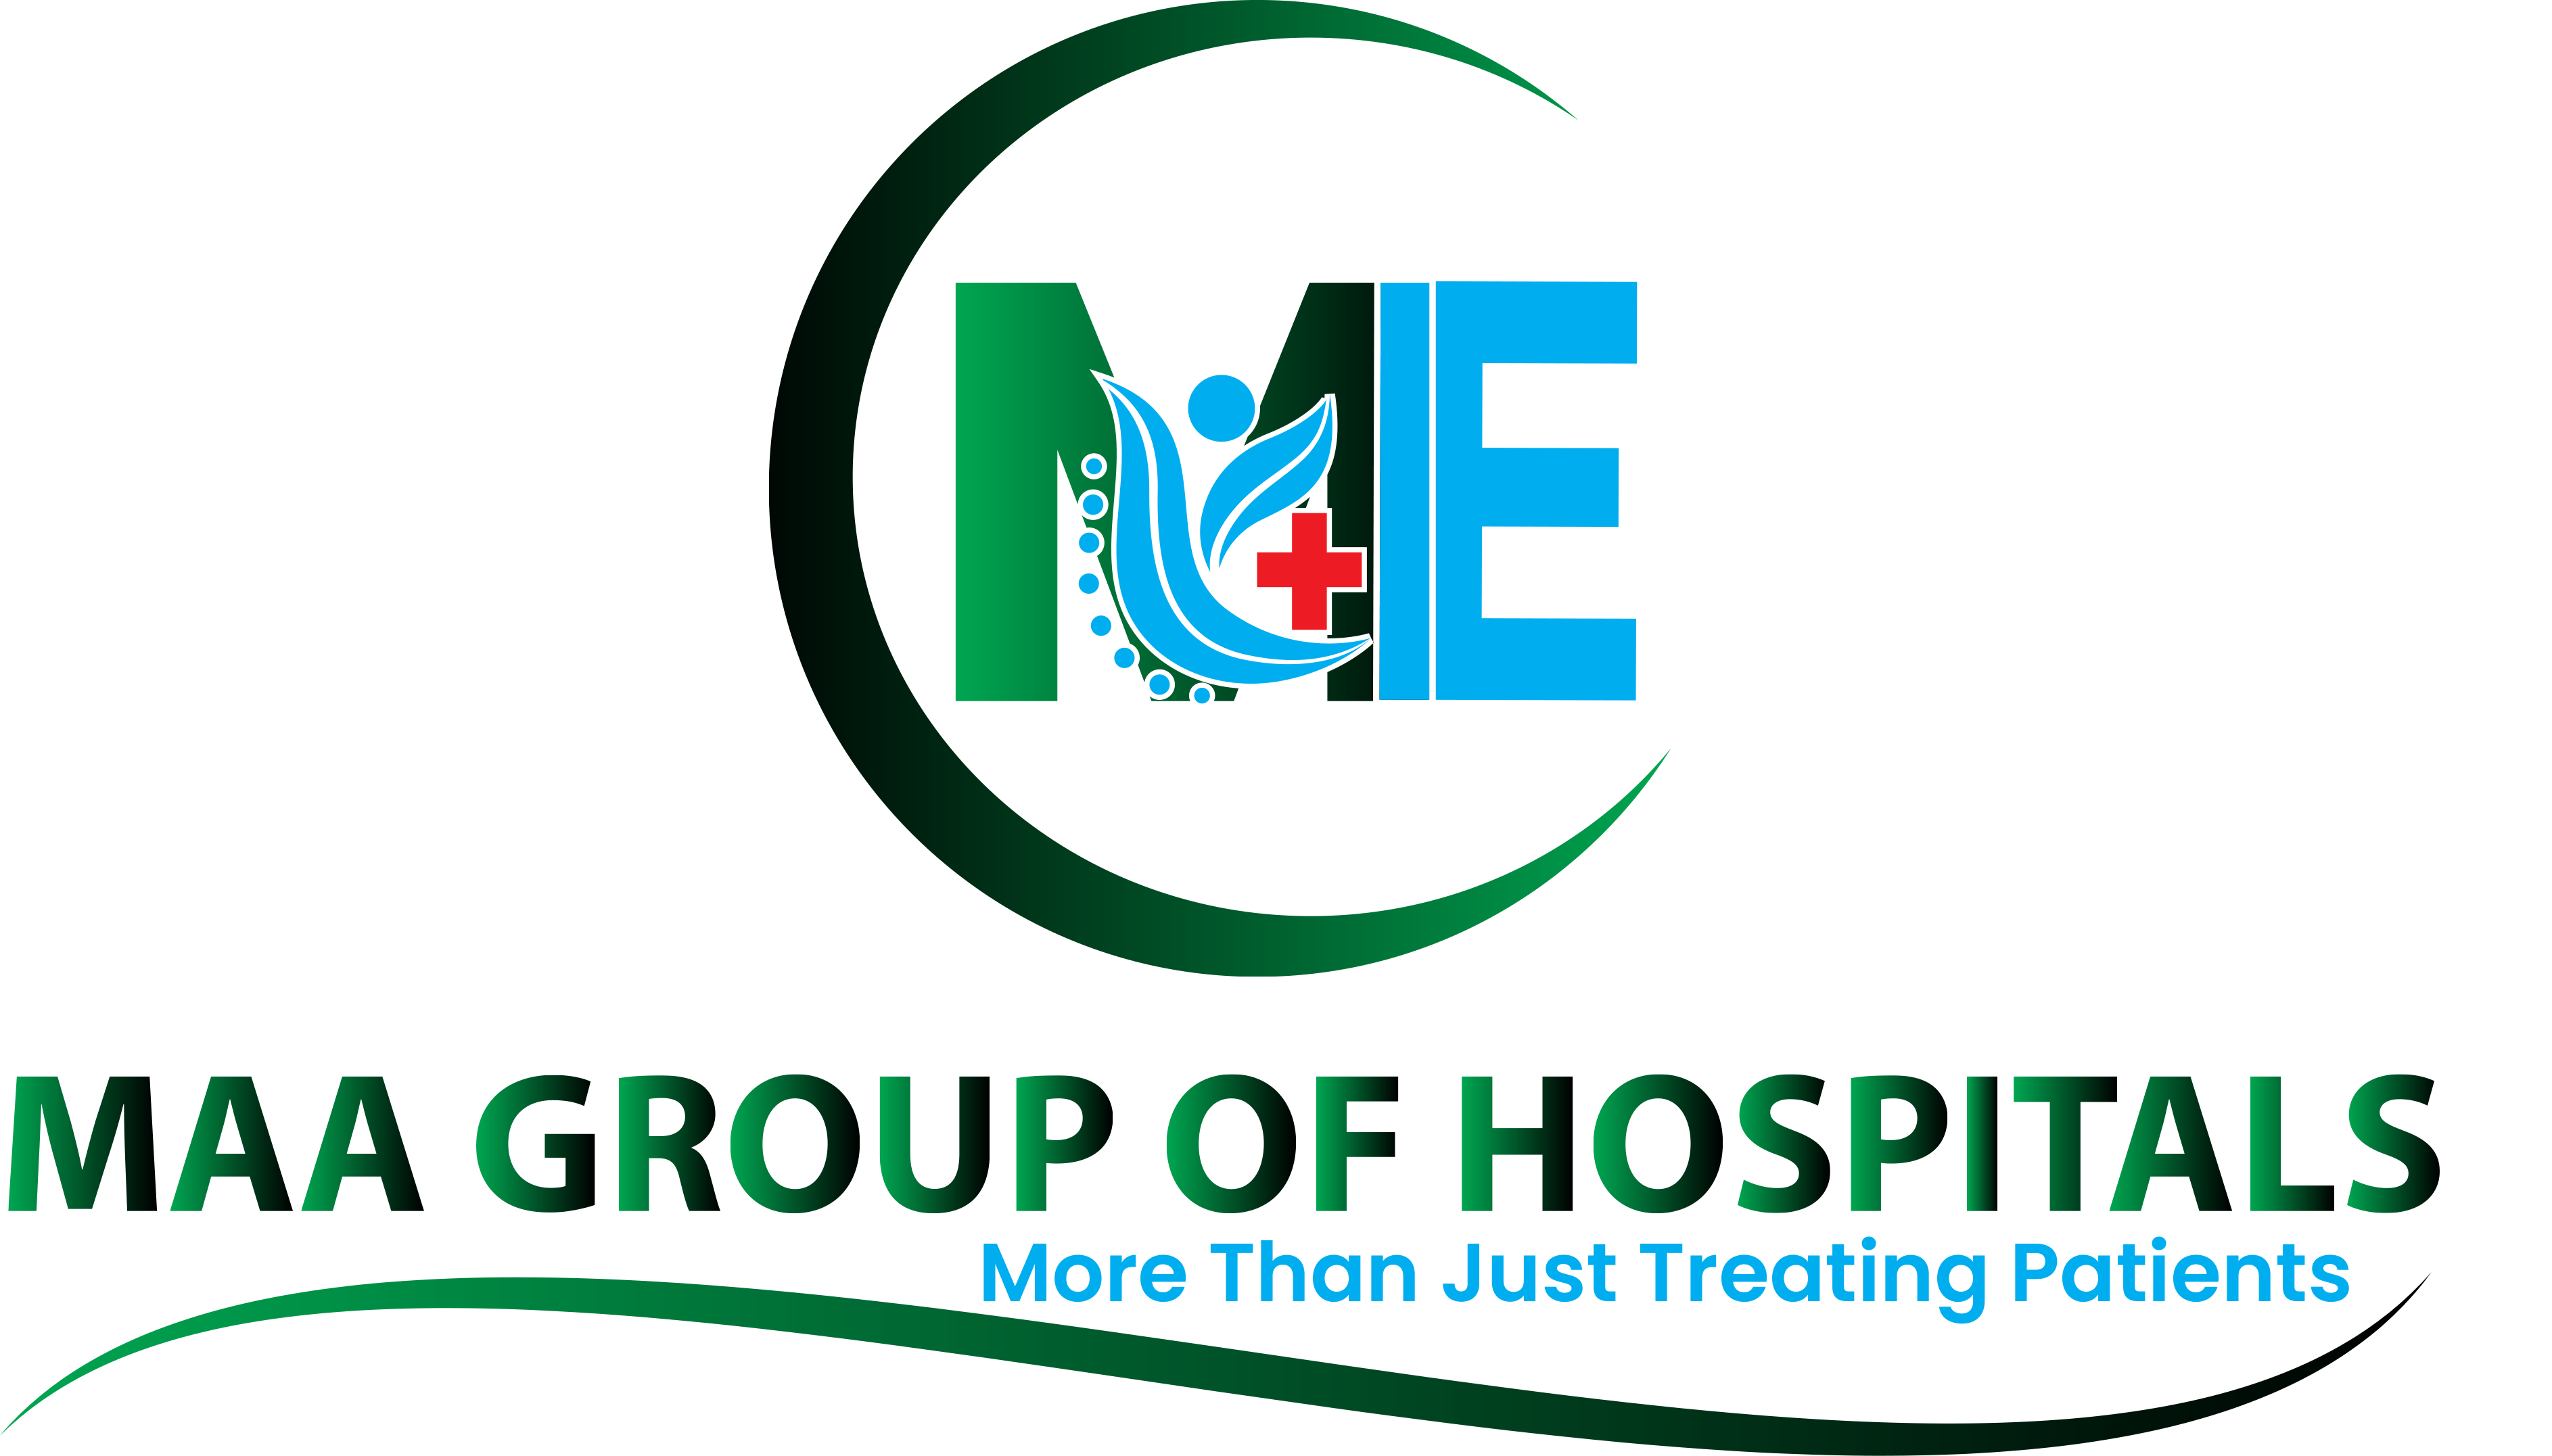 maagroupofhospitals logo